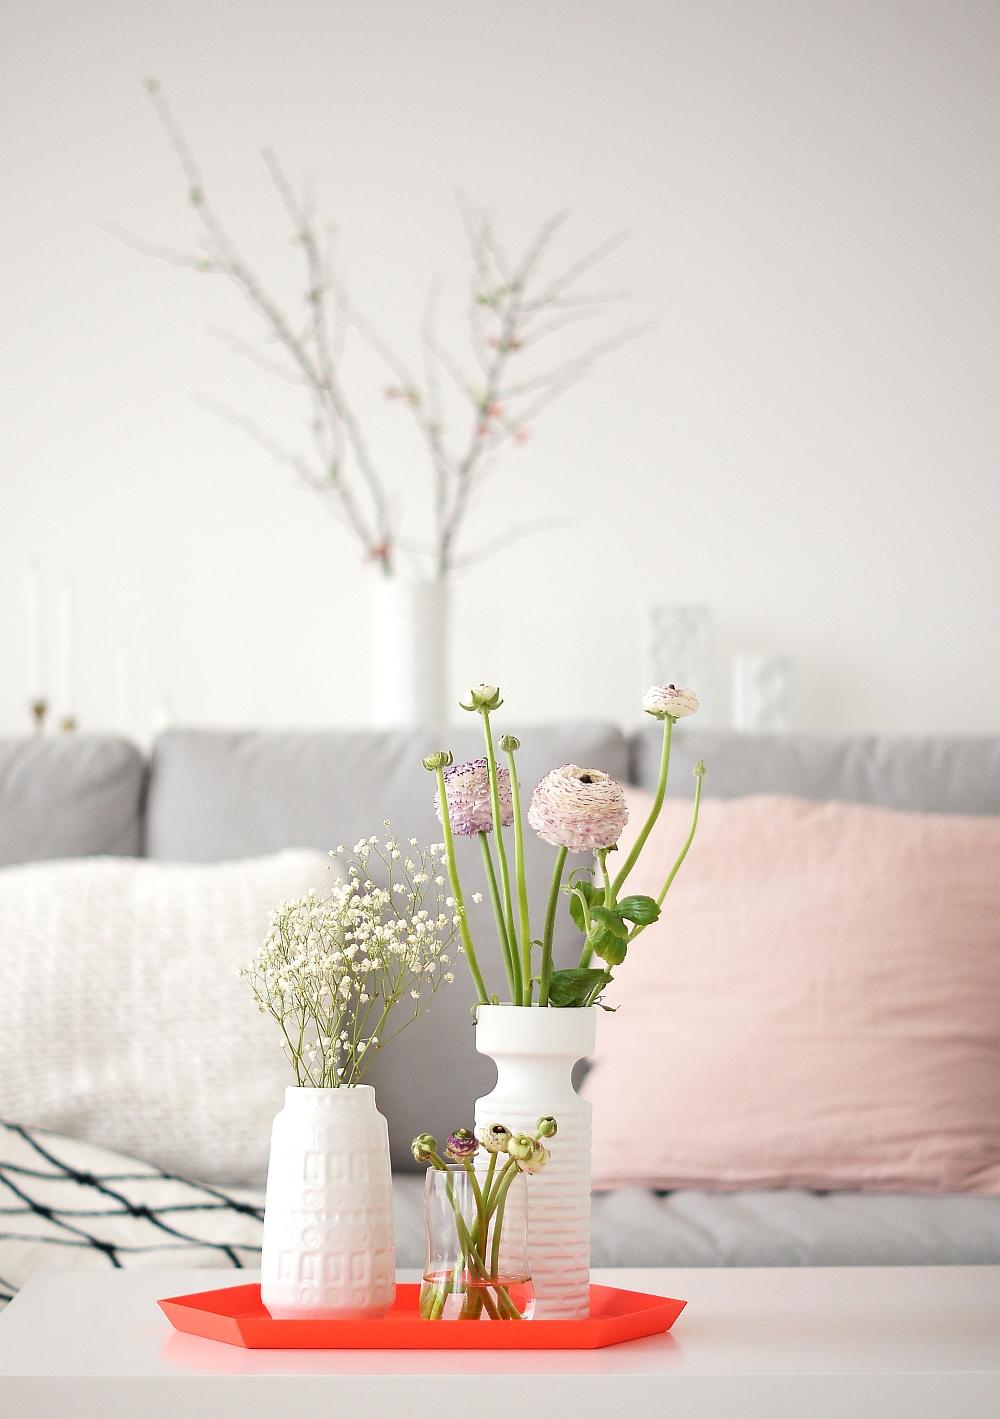 Frühling in pastell und neon #vintage #wohnzimmer #vase #tablett ©Sabine Wittig